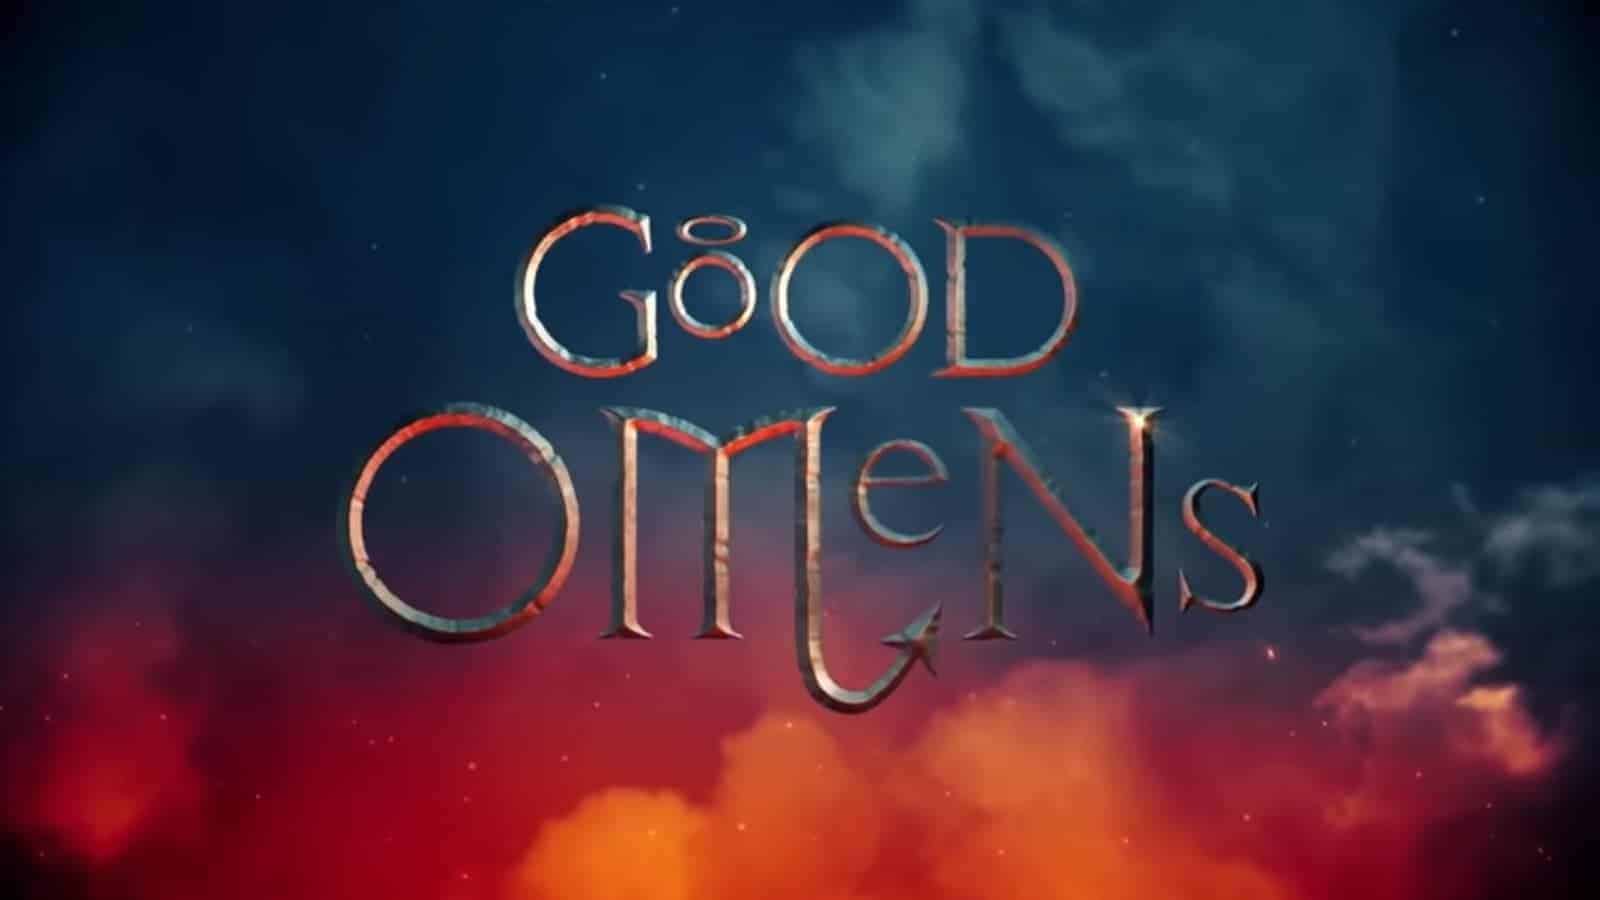 Good Omens Season 2 Release Date